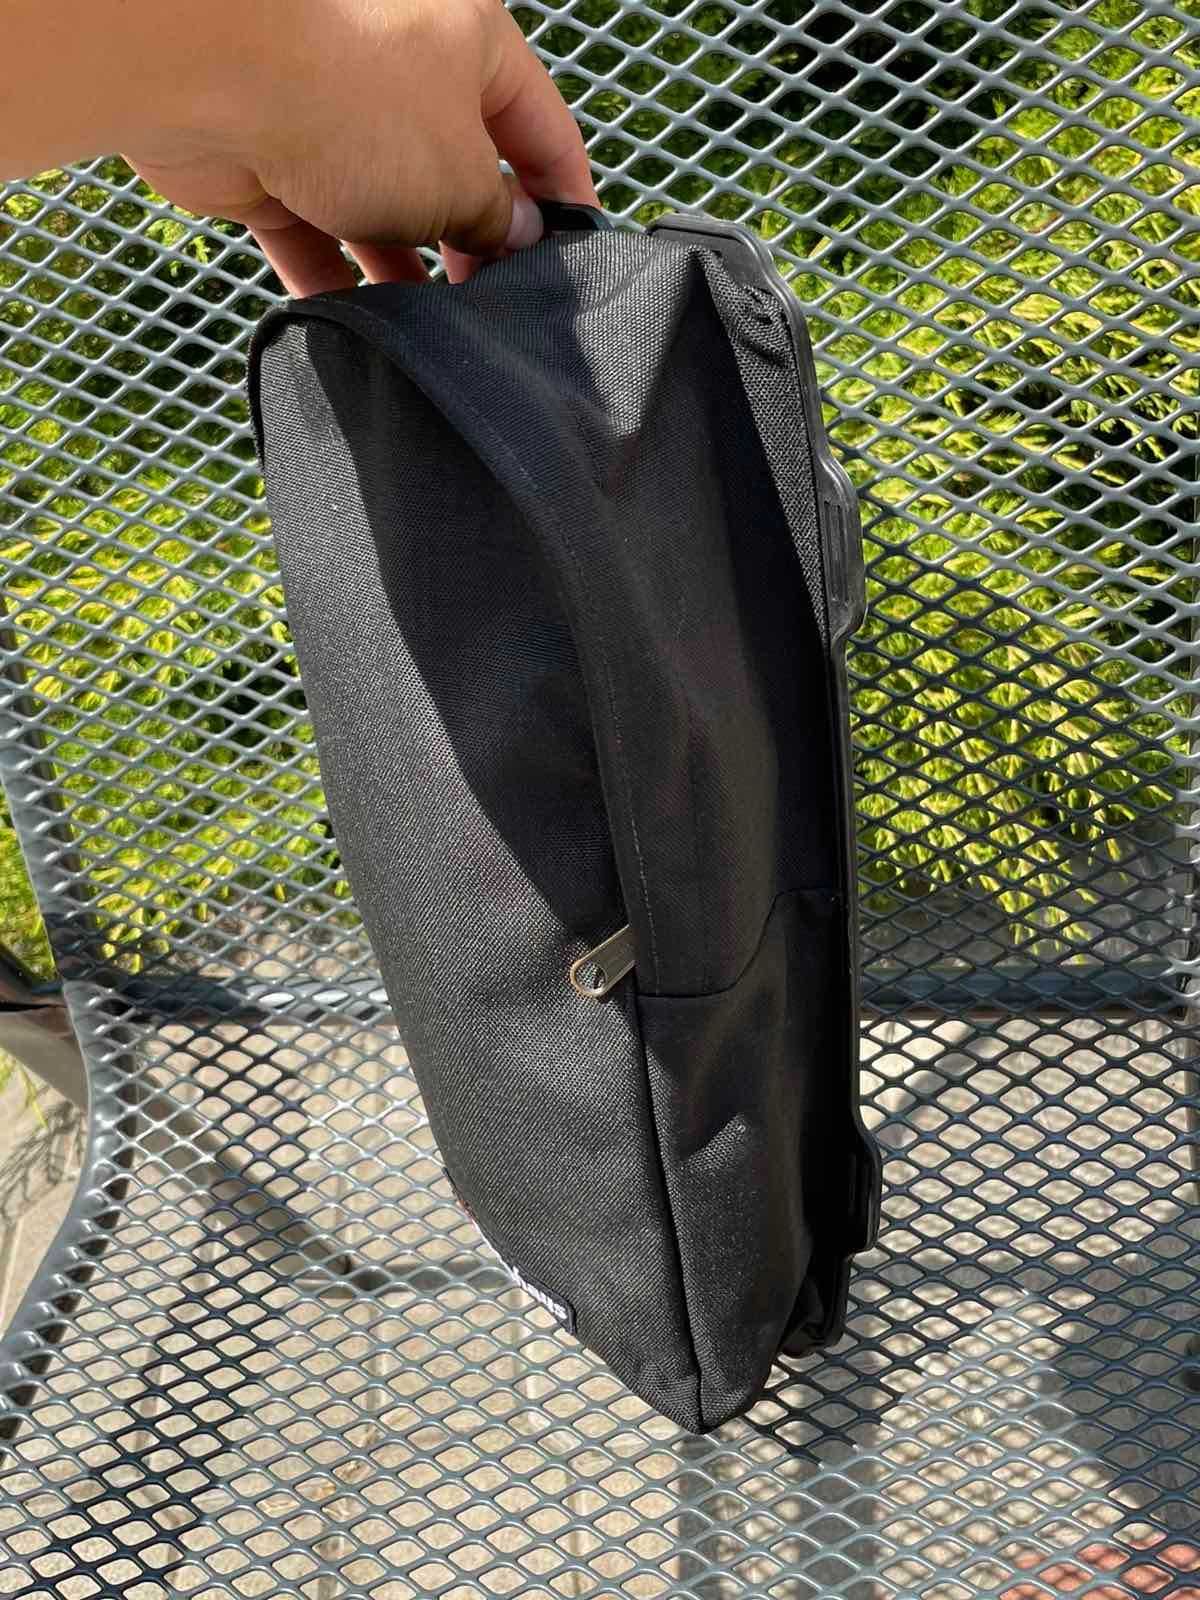 Боковая сумка для рюкзака Berghaus rucksack Munro боковой карман